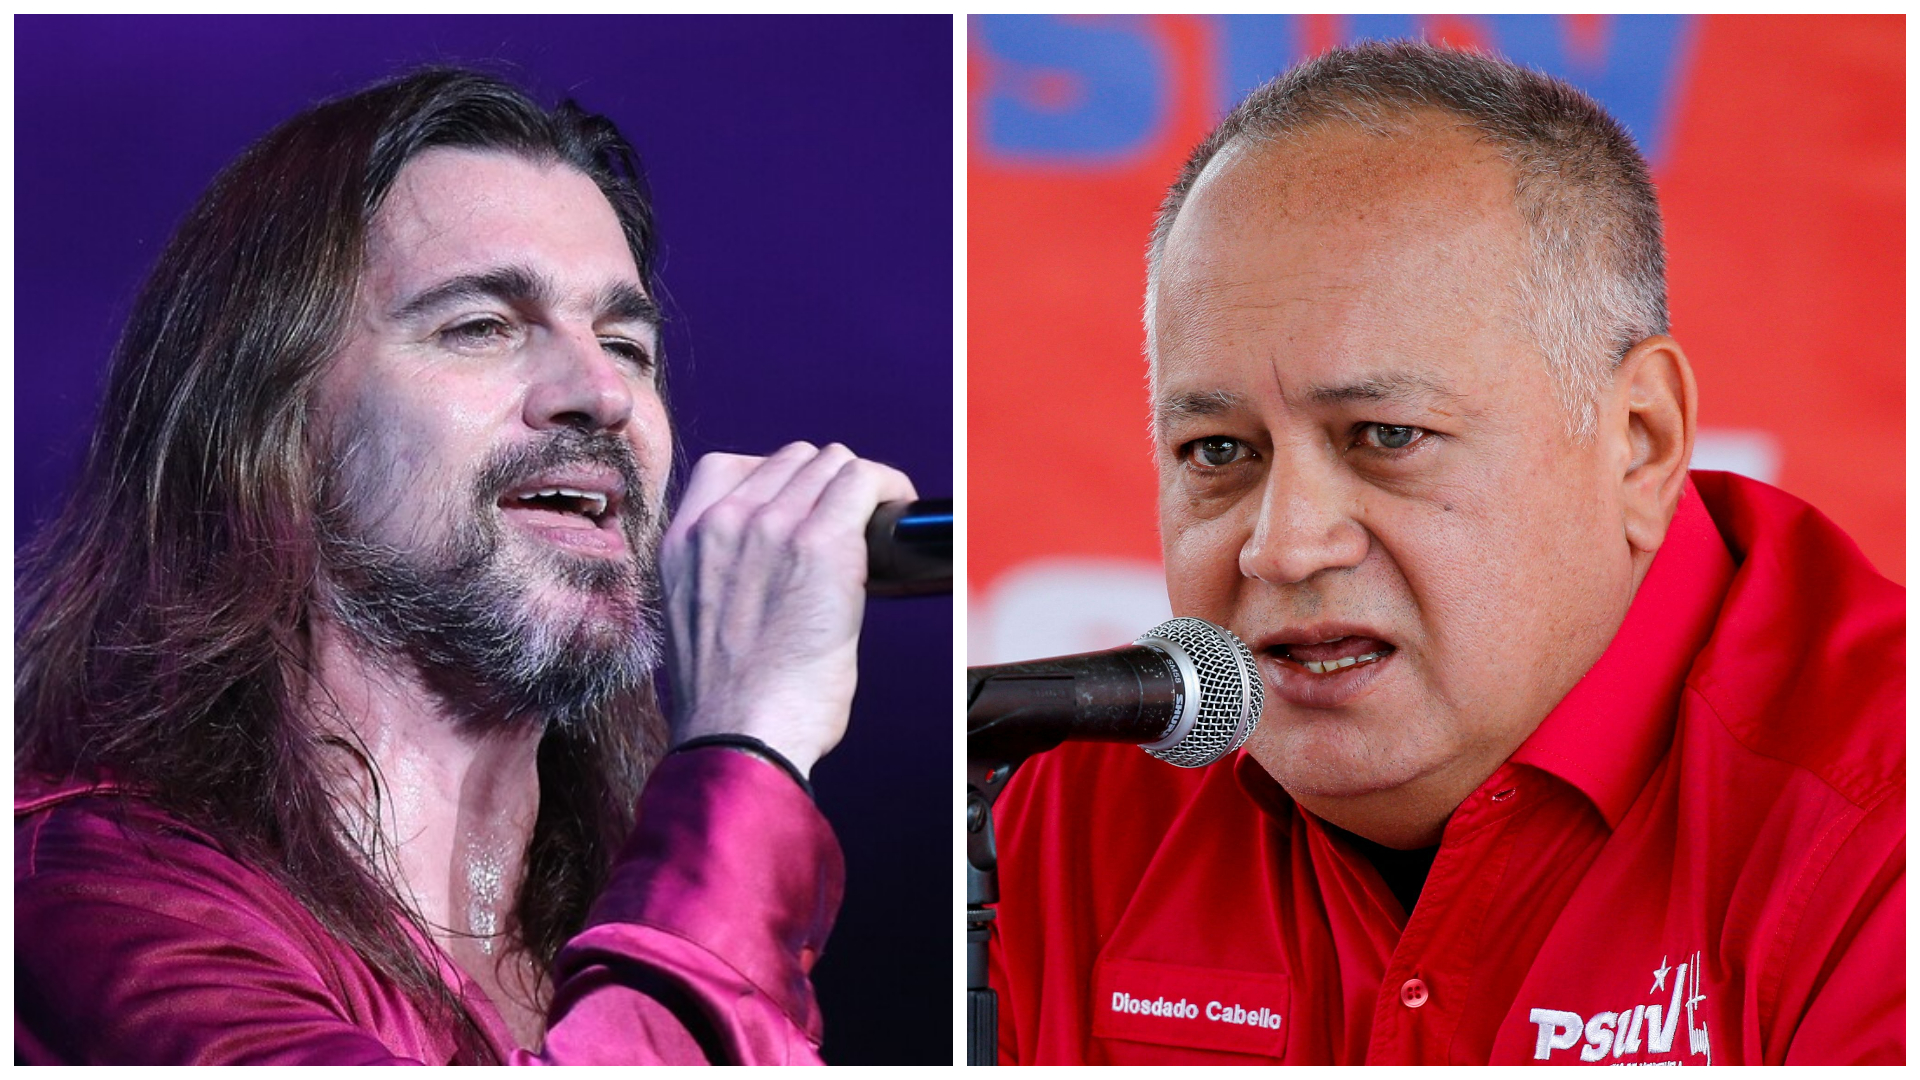 Diosdado Cabello amenazó a Juanes por criticar a Maduro: “Si yo le puedo dar, le voy a dar, gusano”